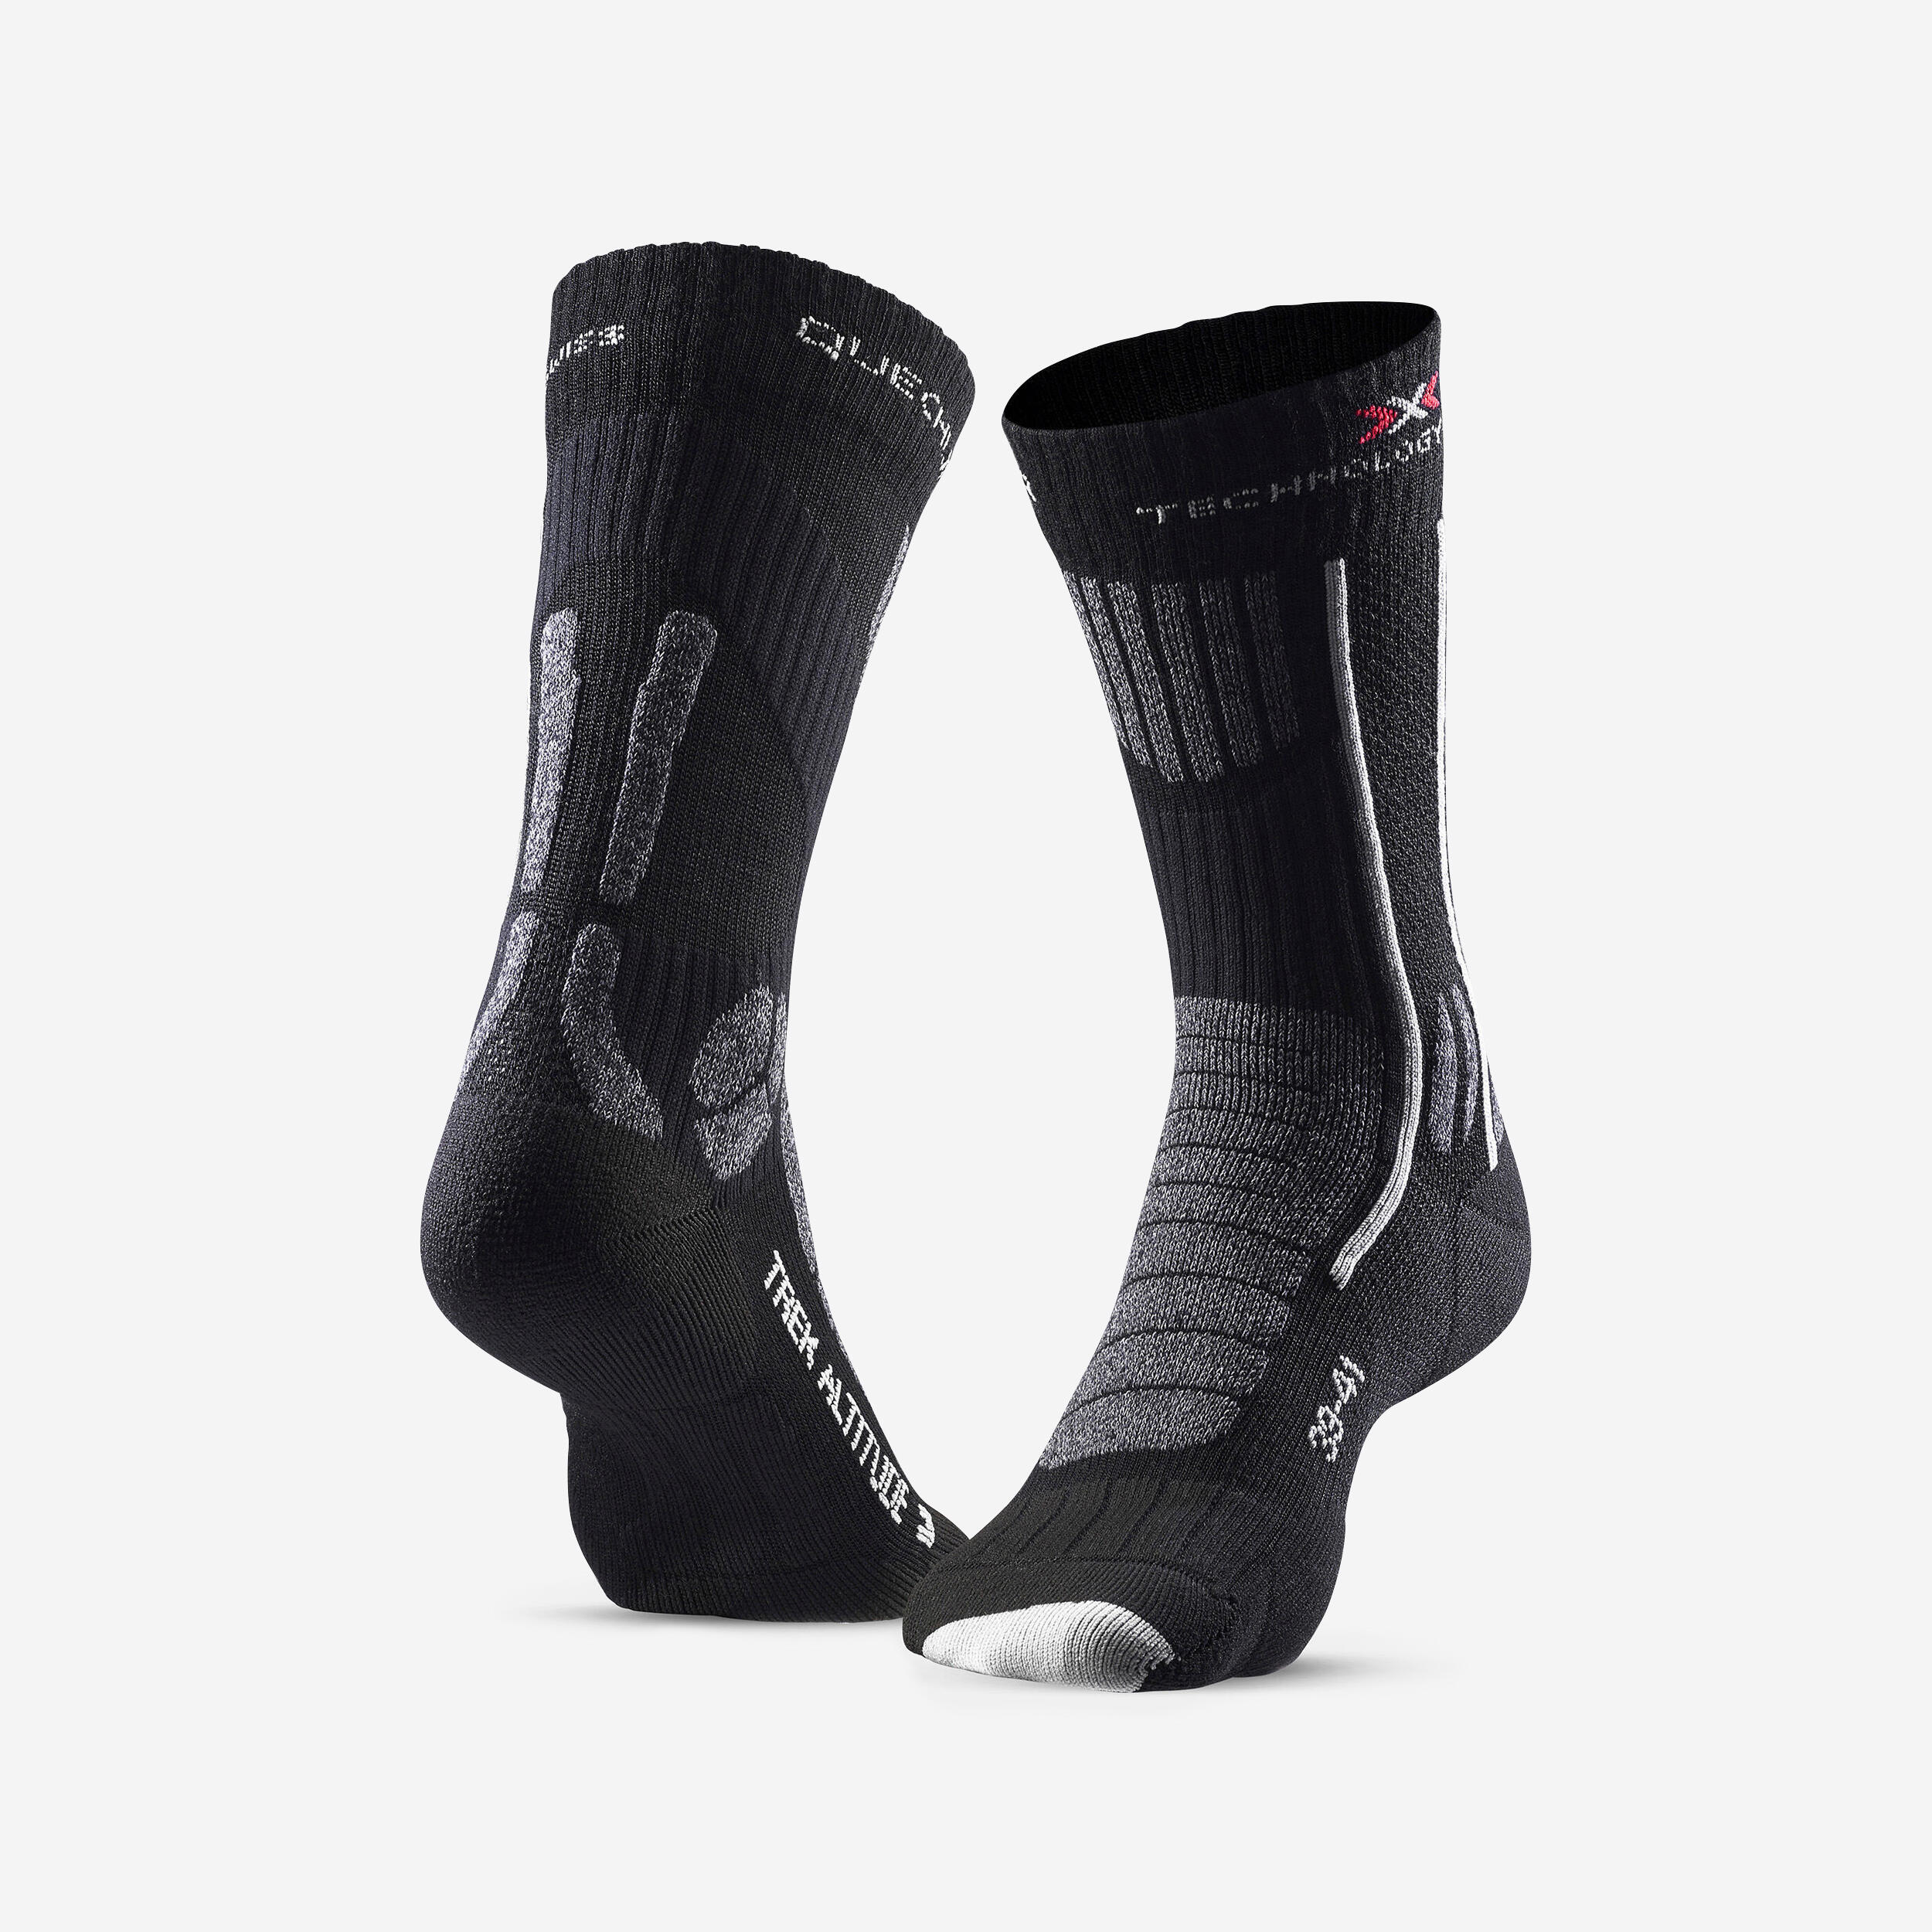 QUECHUA Trek Altitude Socks (pack of 1 pair) - Black